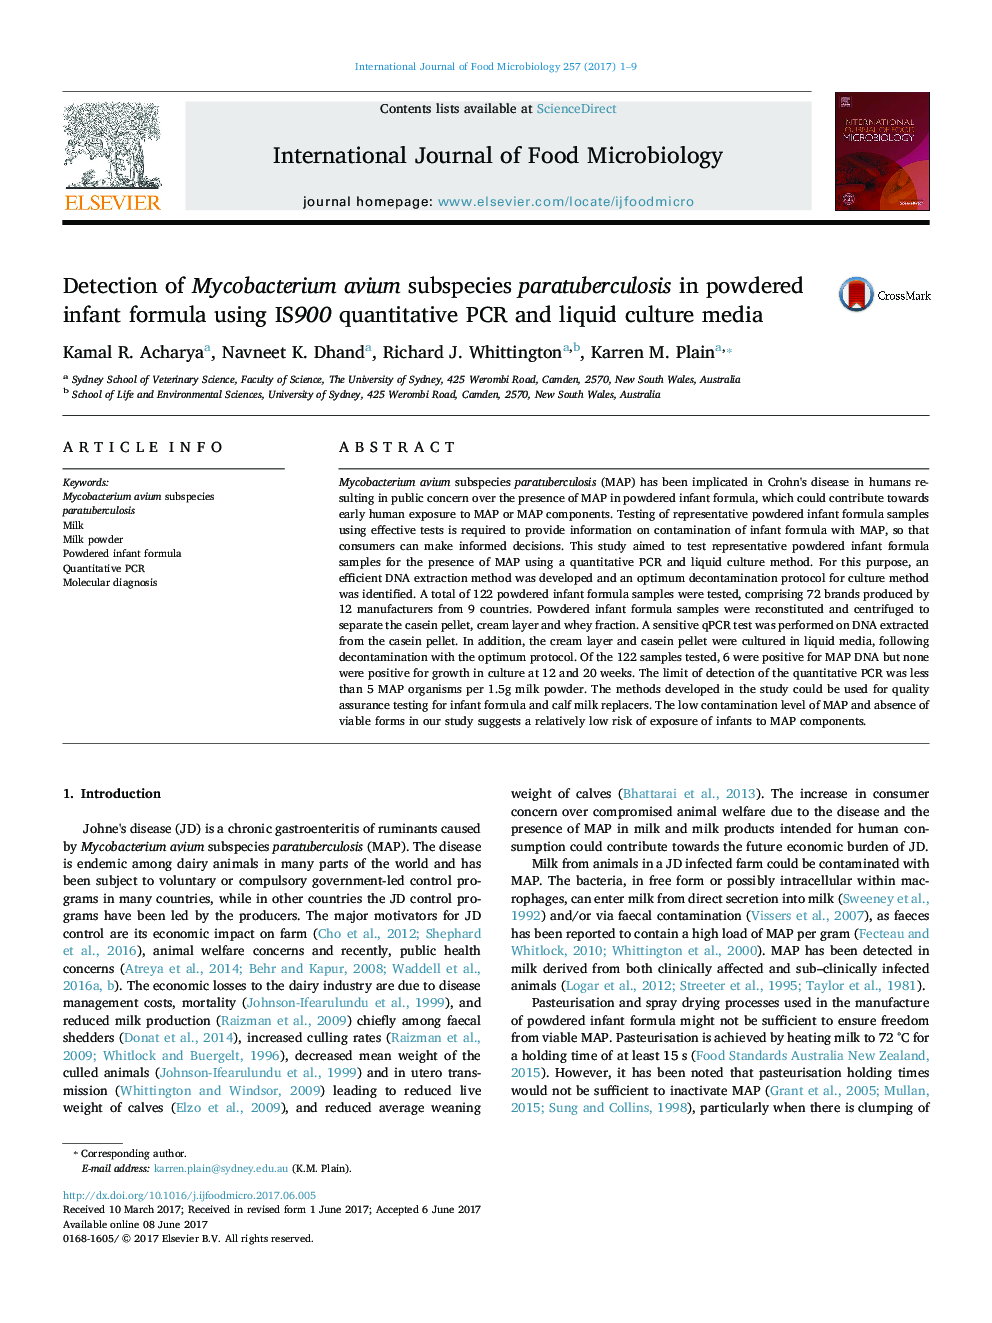 Detection of Mycobacterium avium subspecies paratuberculosis in powdered infant formula using IS900 quantitative PCR and liquid culture media